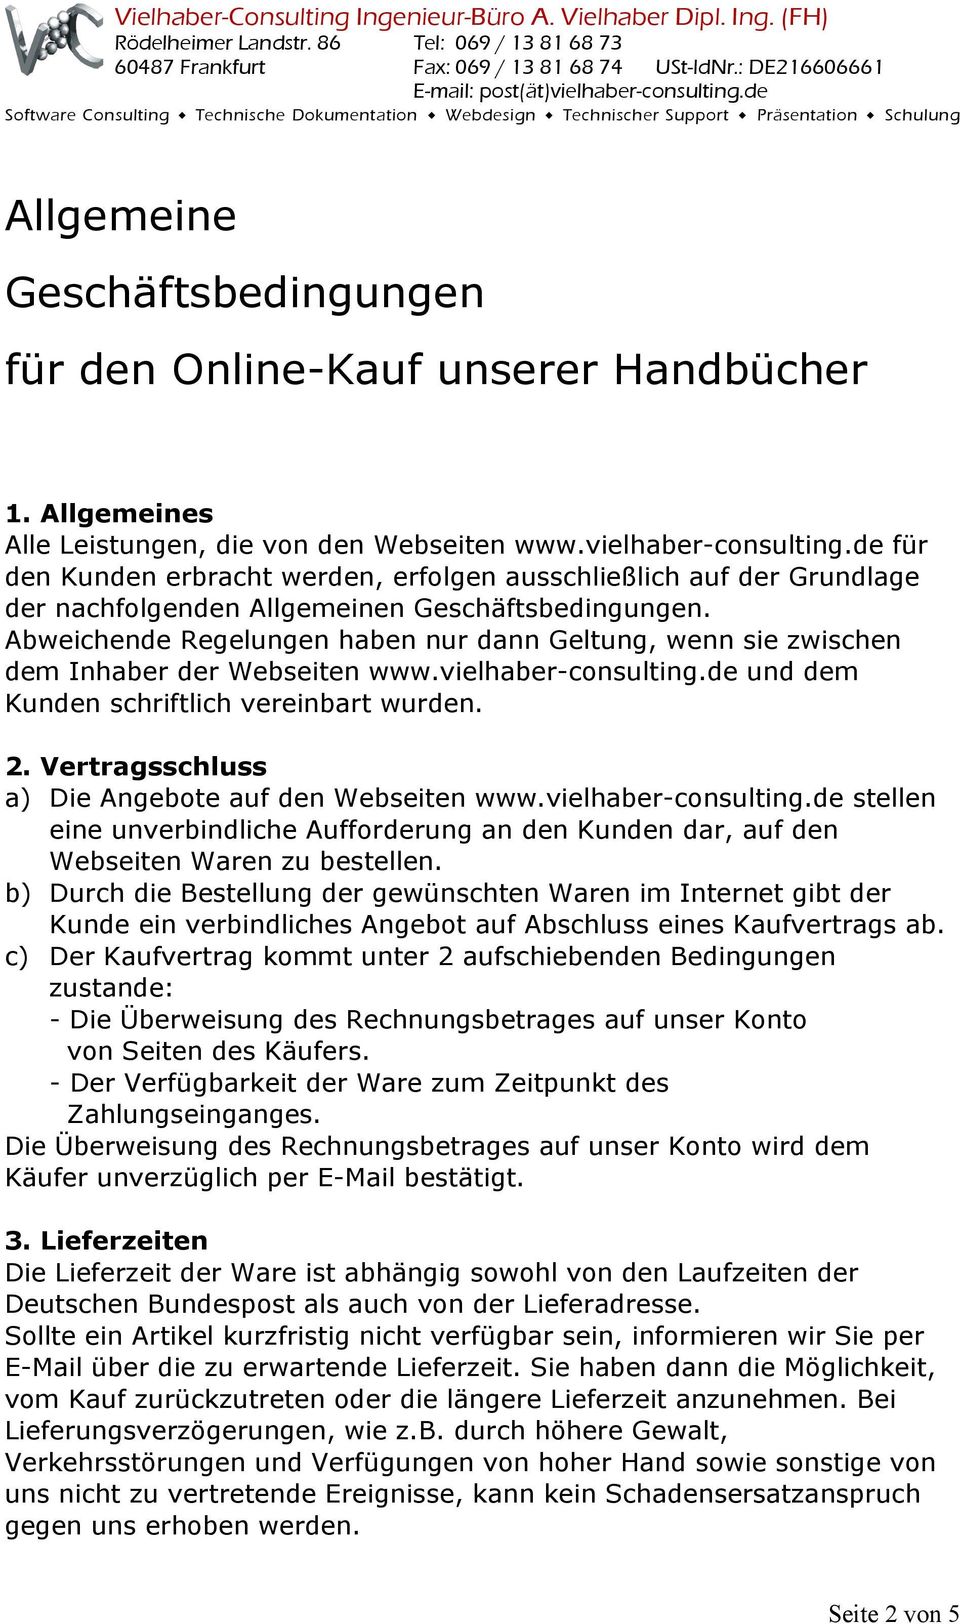 Abweichende Regelungen haben nur dann Geltung, wenn sie zwischen dem Inhaber der Webseiten www.vielhaber-consulting.de und dem Kunden schriftlich vereinbart wurden. 2.